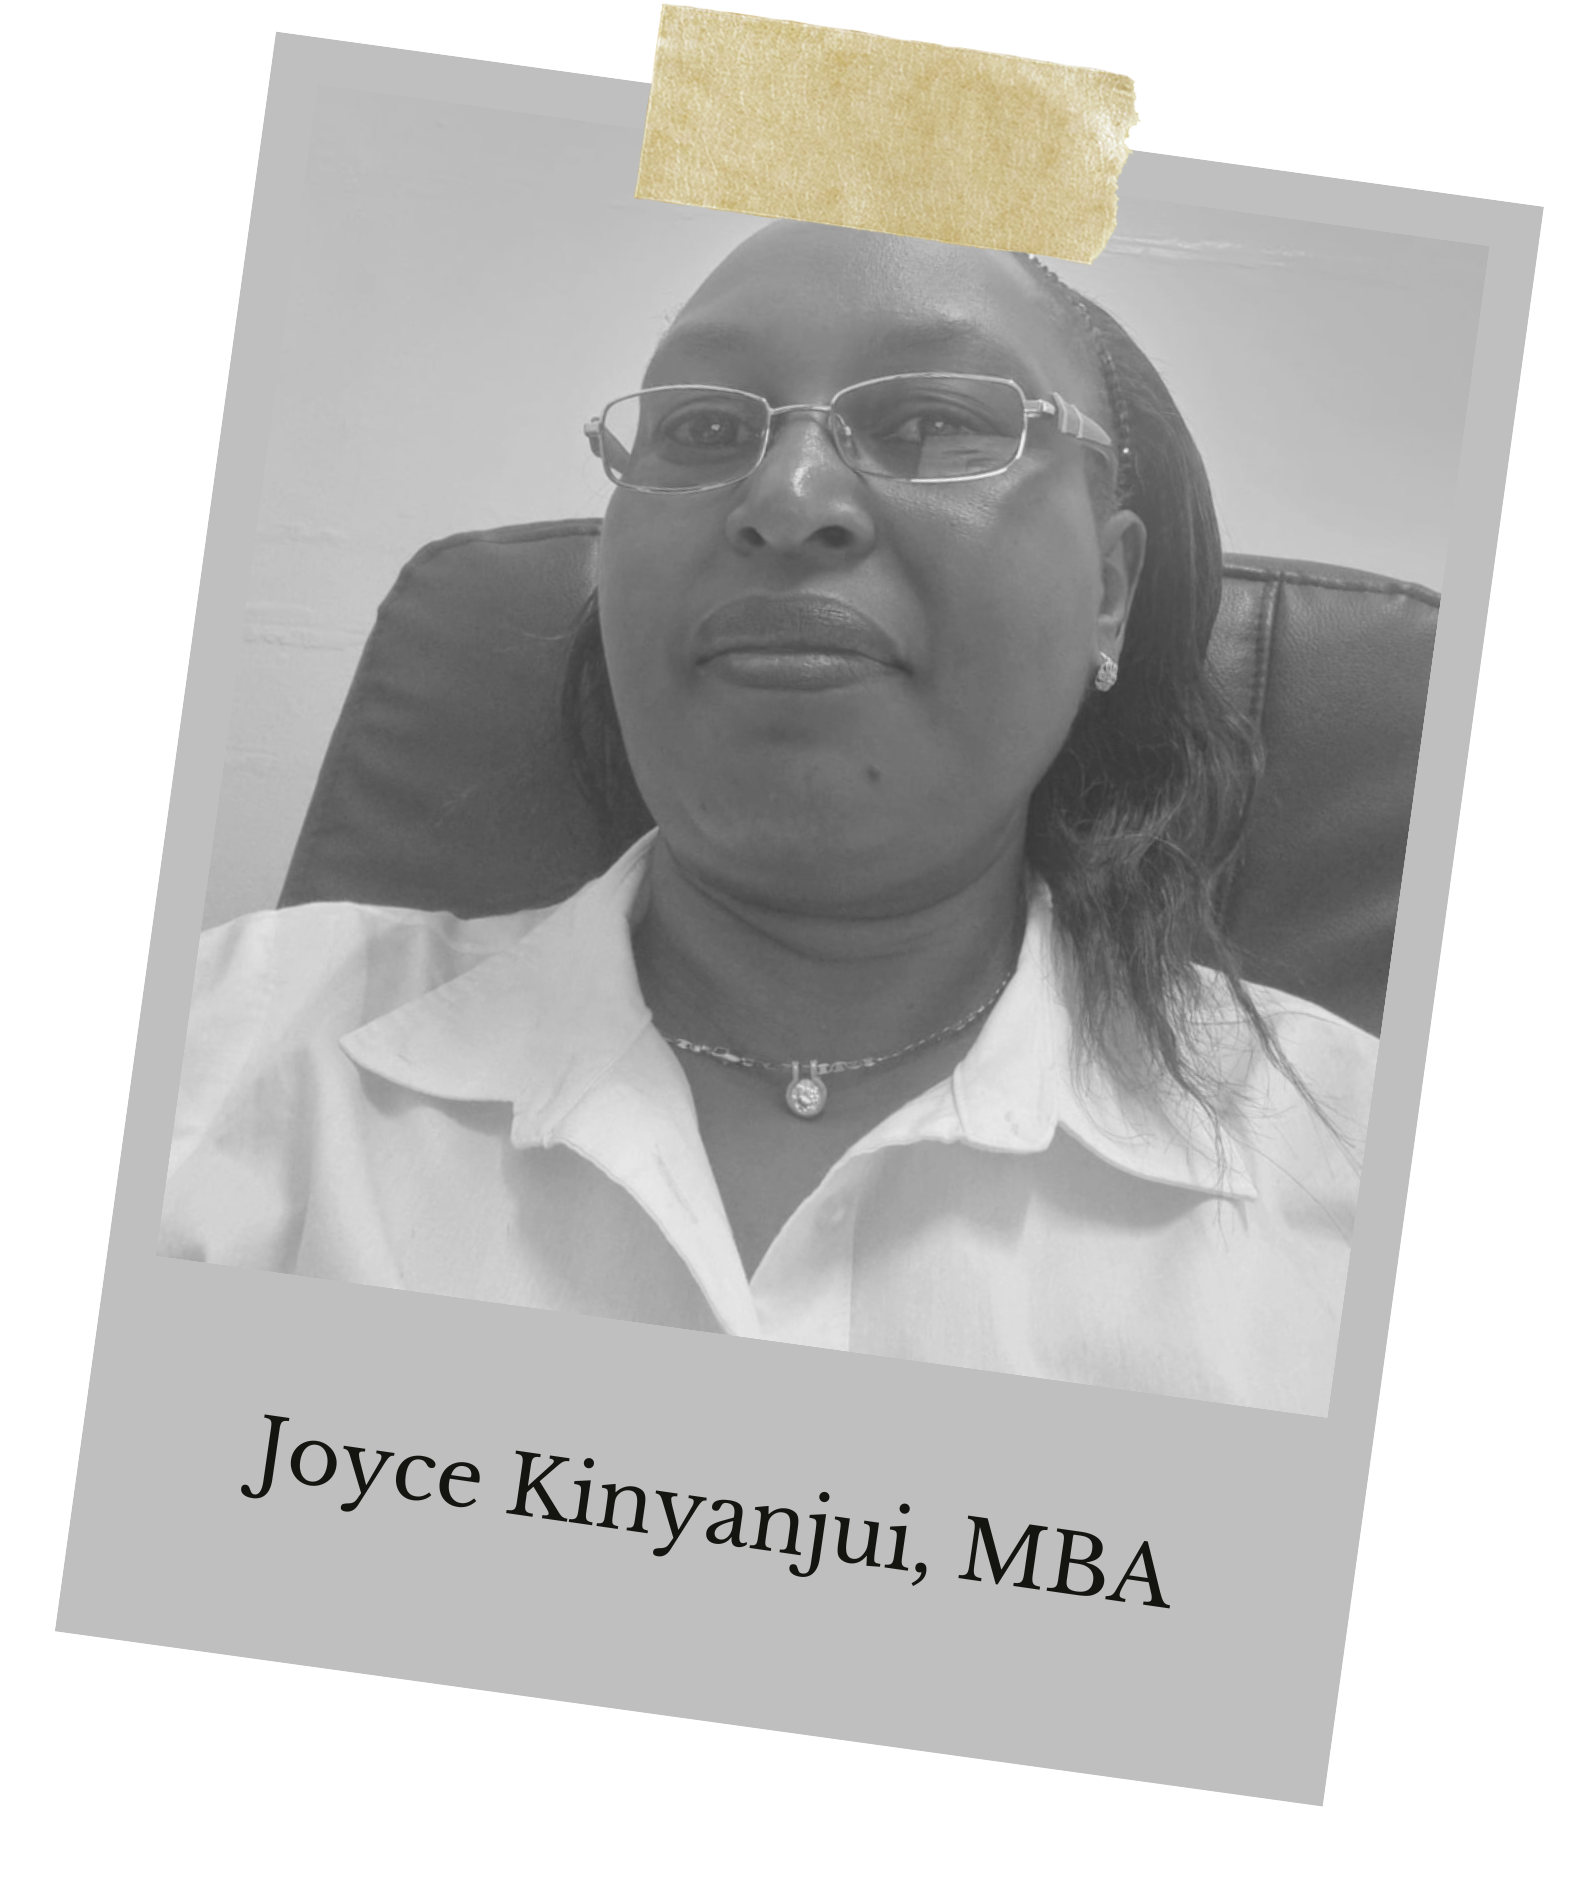 Joyce Kinyanjui